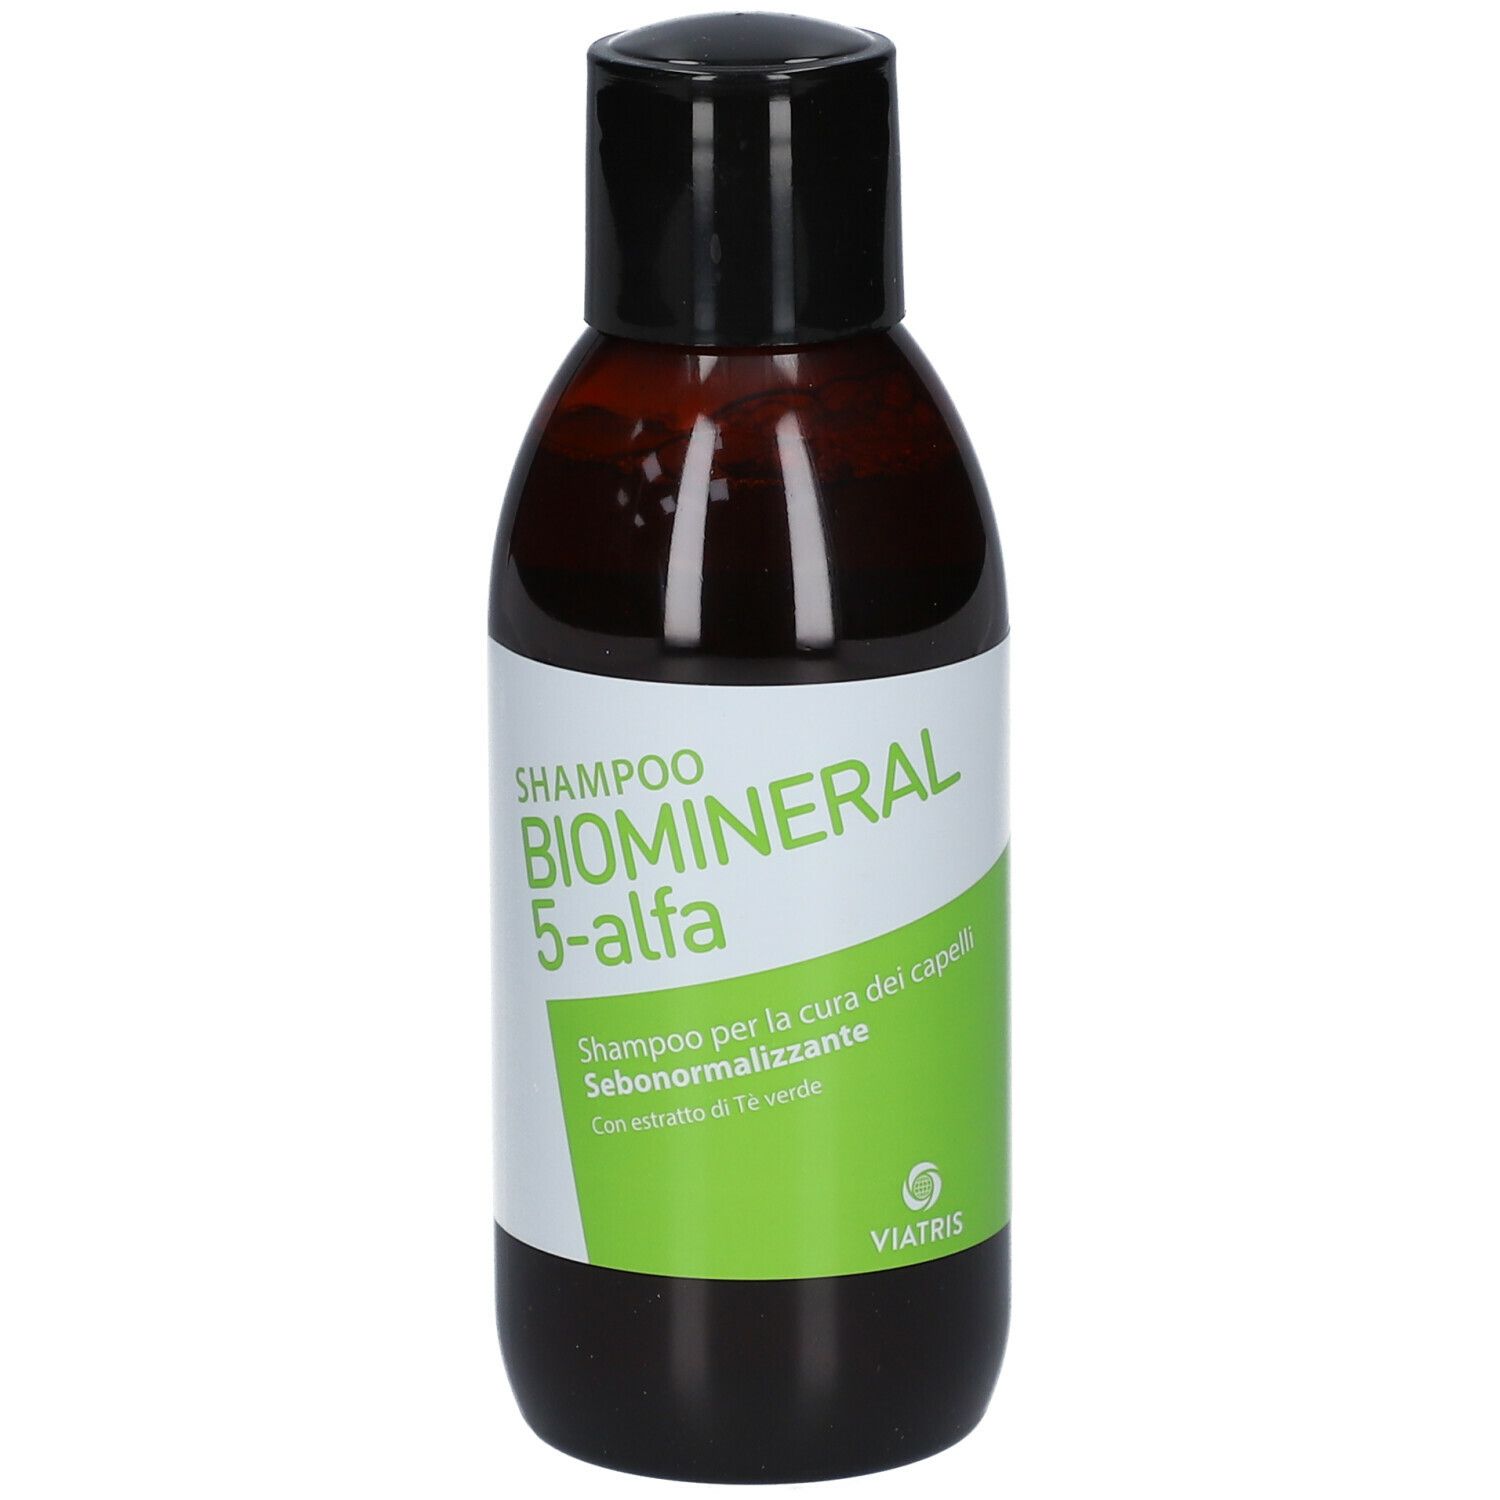 BIOMINERAL 5-alfa Shampoo